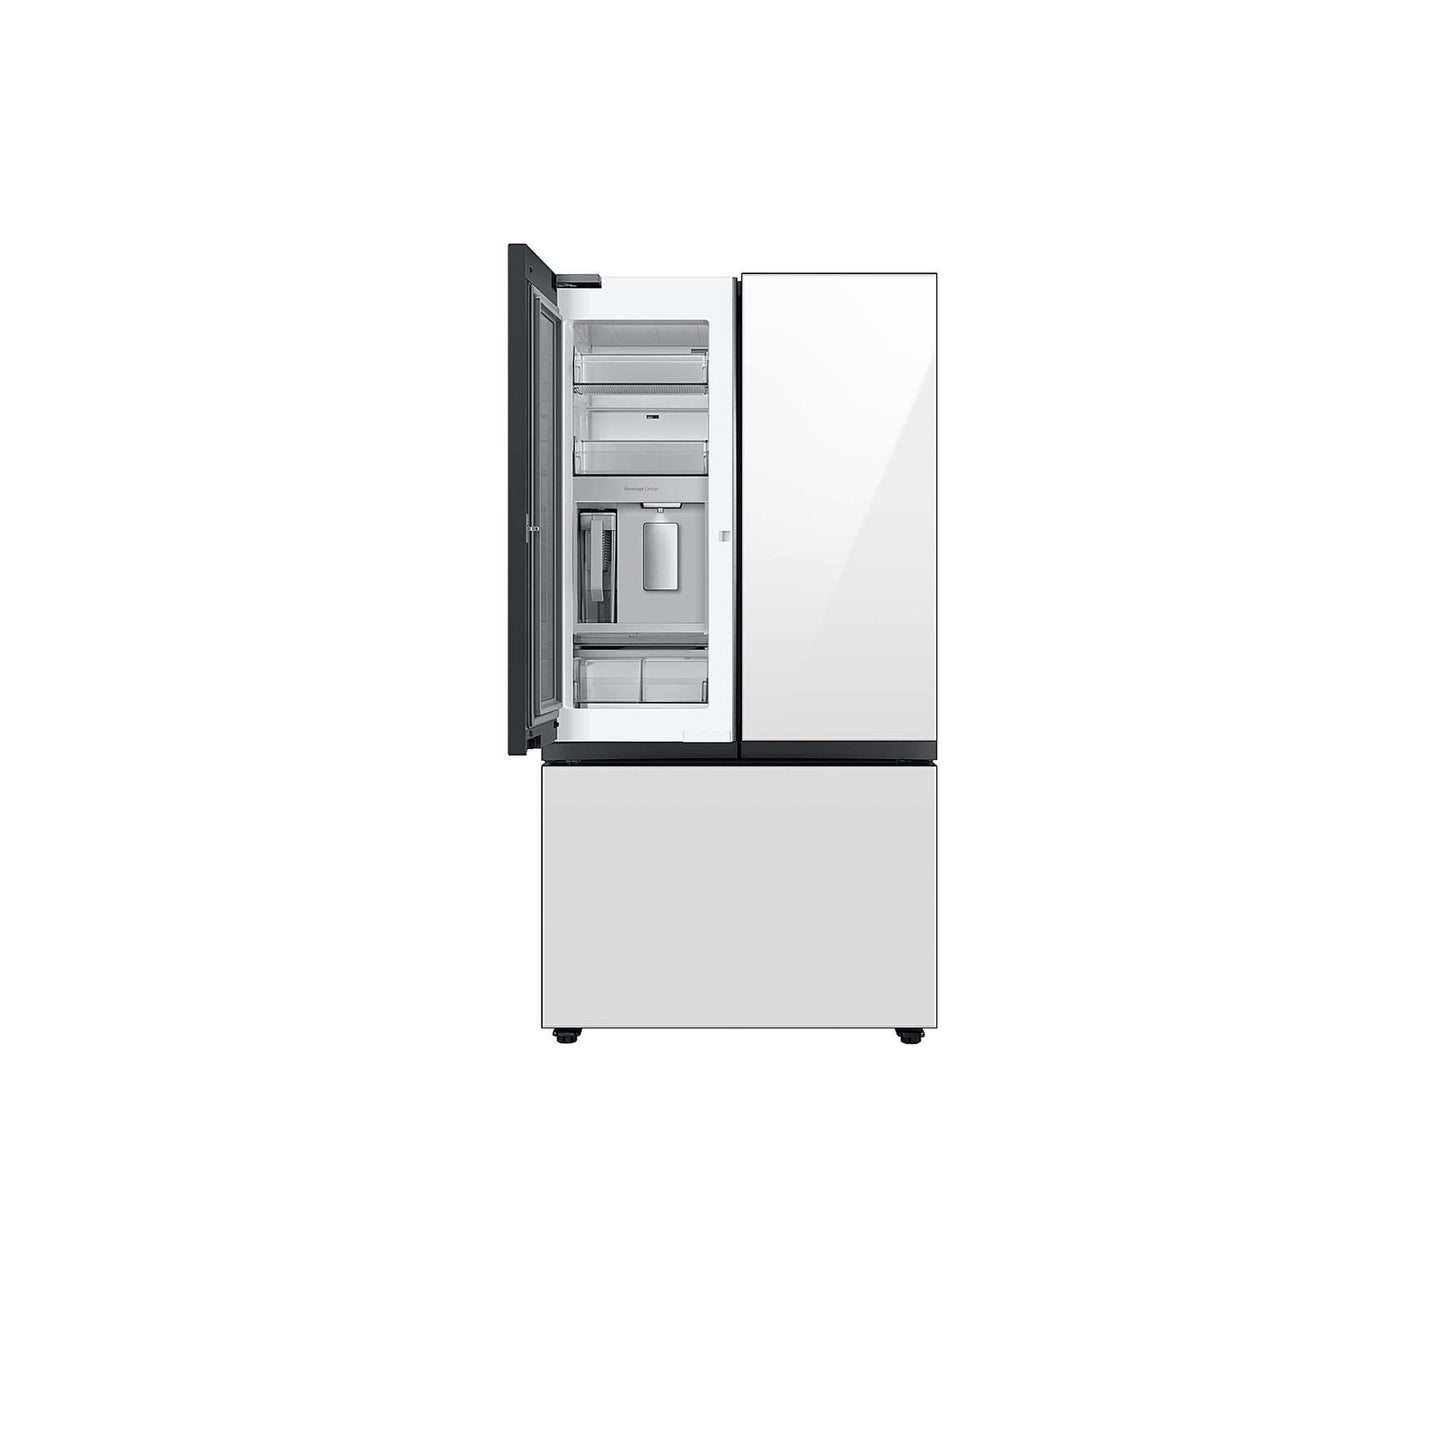 Bespoke 3-Door French Door Refrigerator (24 cu. ft.) with Beverage Center™ in Stainless Steel.